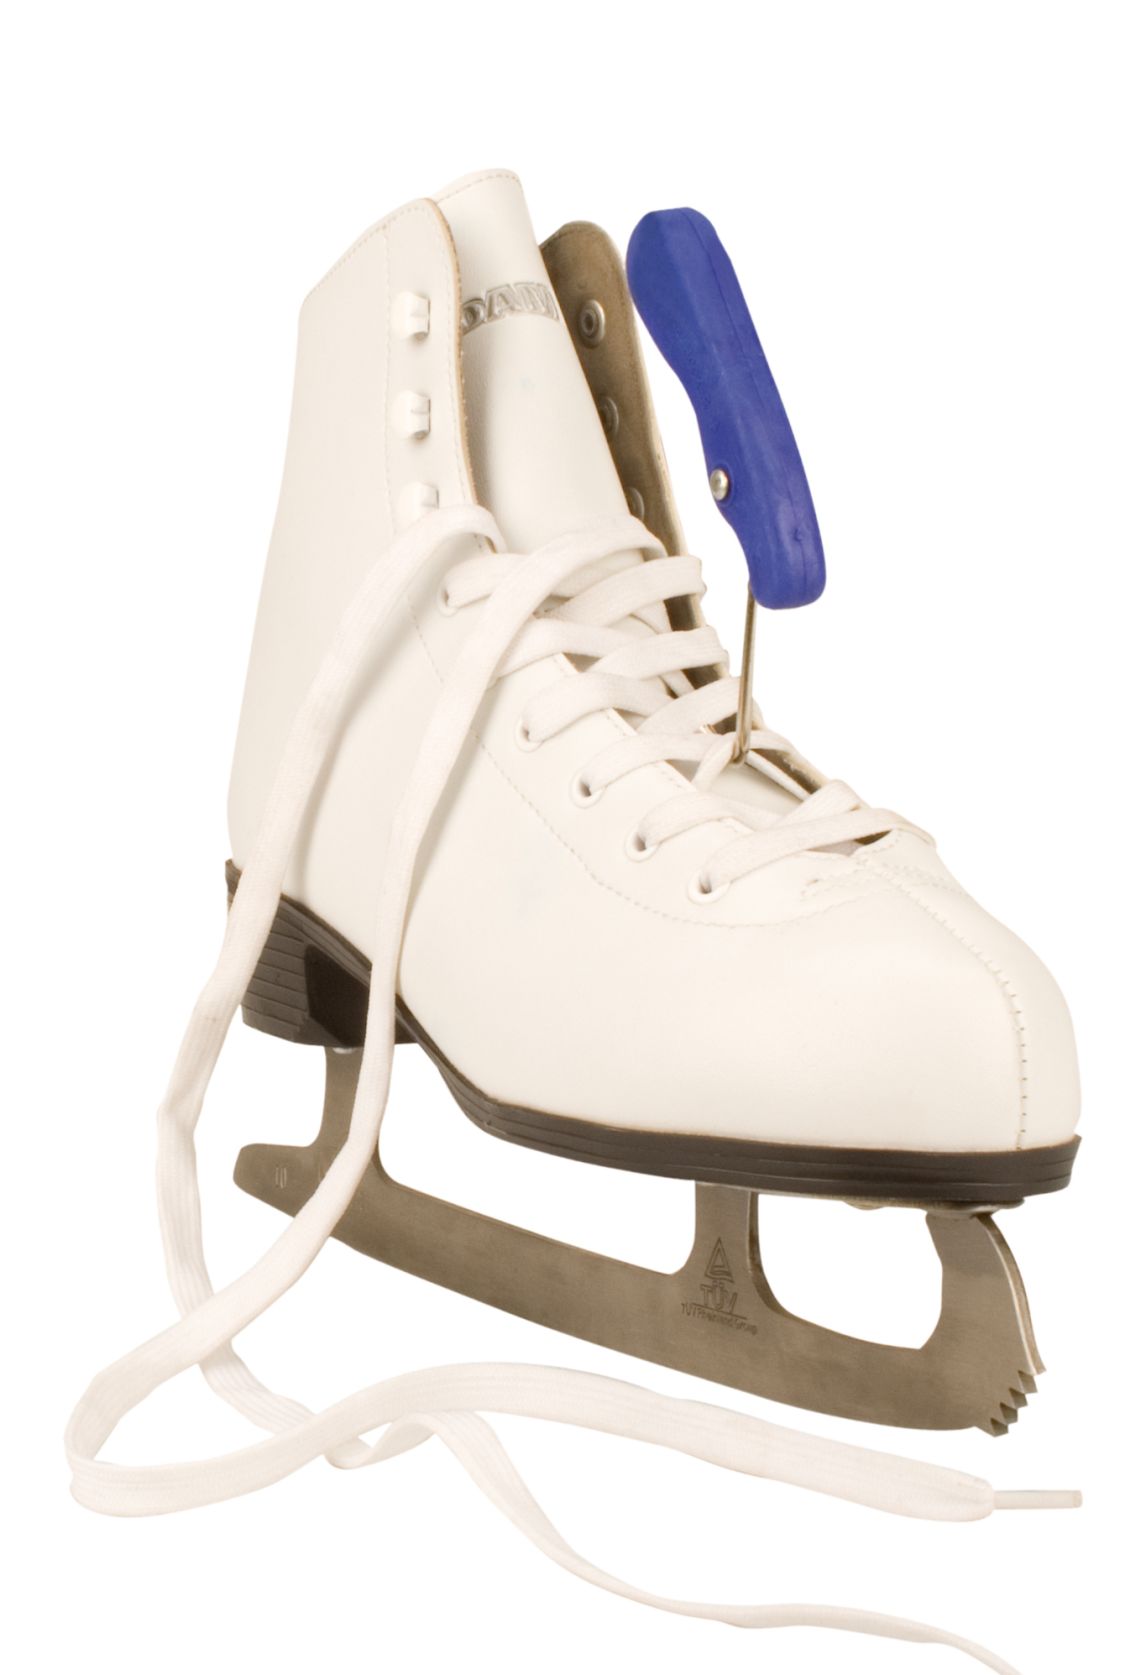 Schreuders Sport lace hooks, shoelace hooks ice hockey skating ice skates